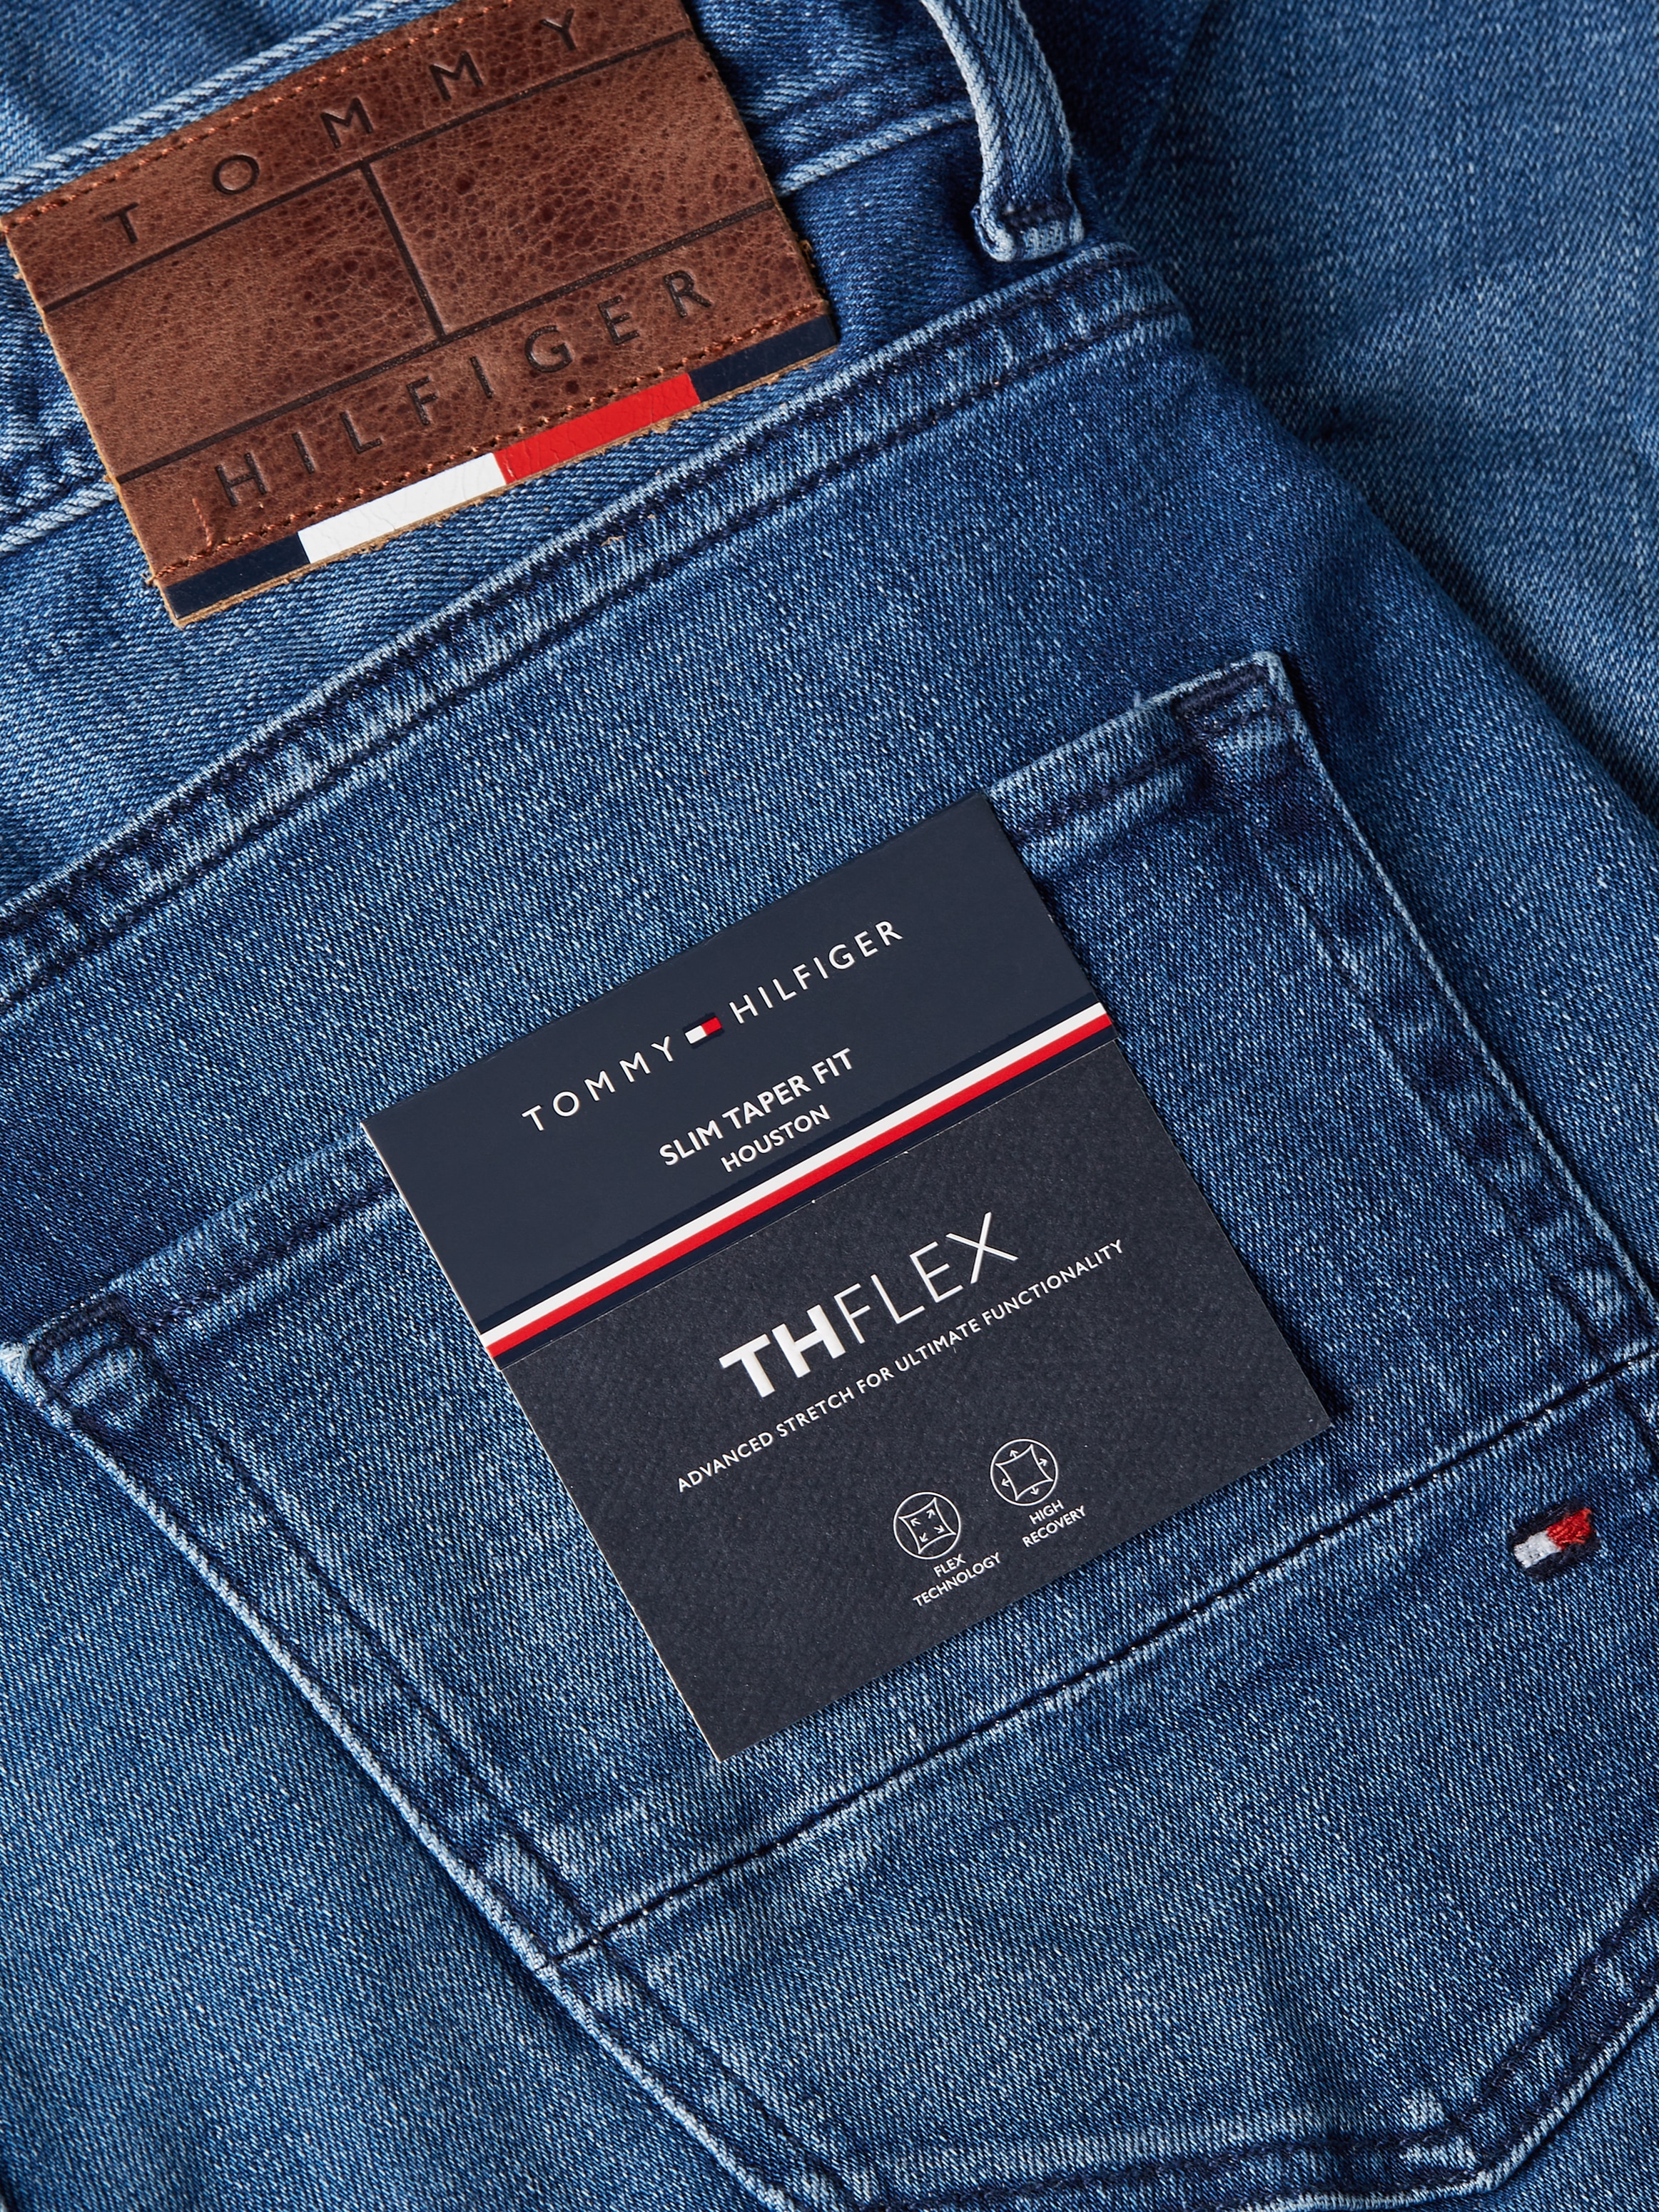 bestellen ohne versandkostenfrei ➤ Jeans Mindestbestellwert - Bequeme